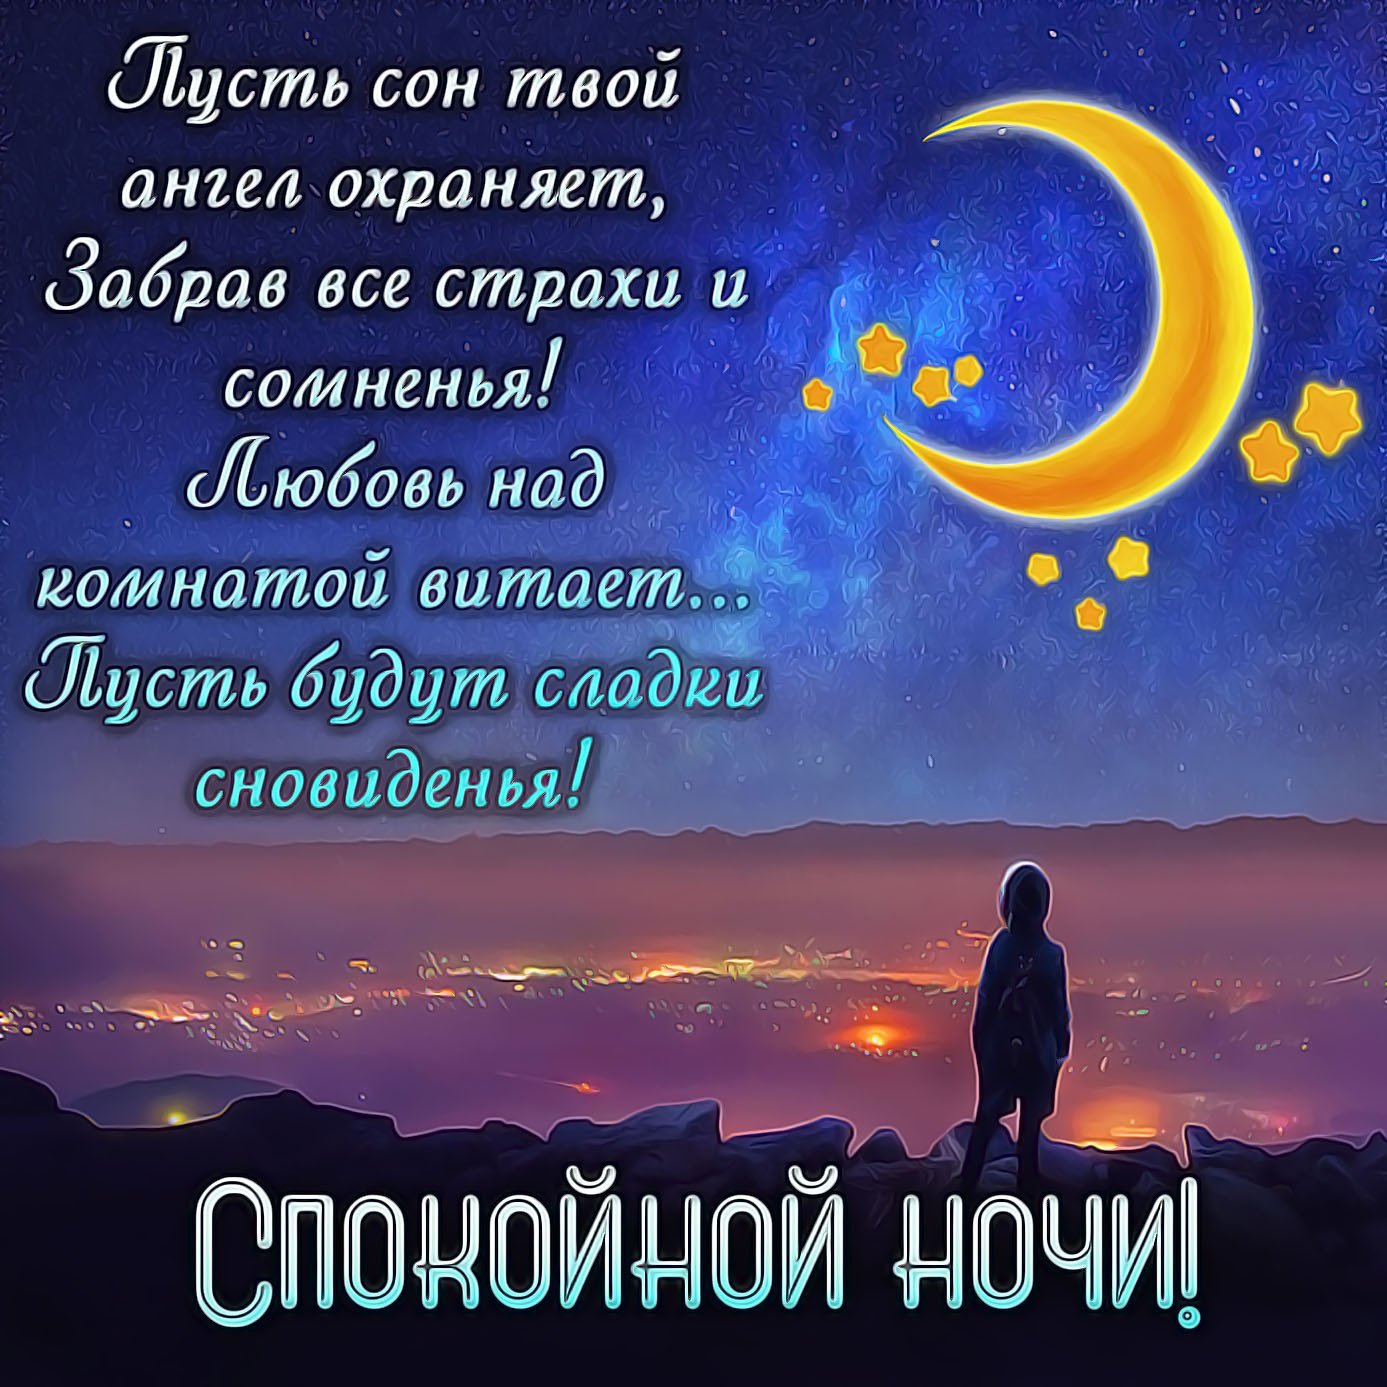 доброй ночи на узбекском языке картинки